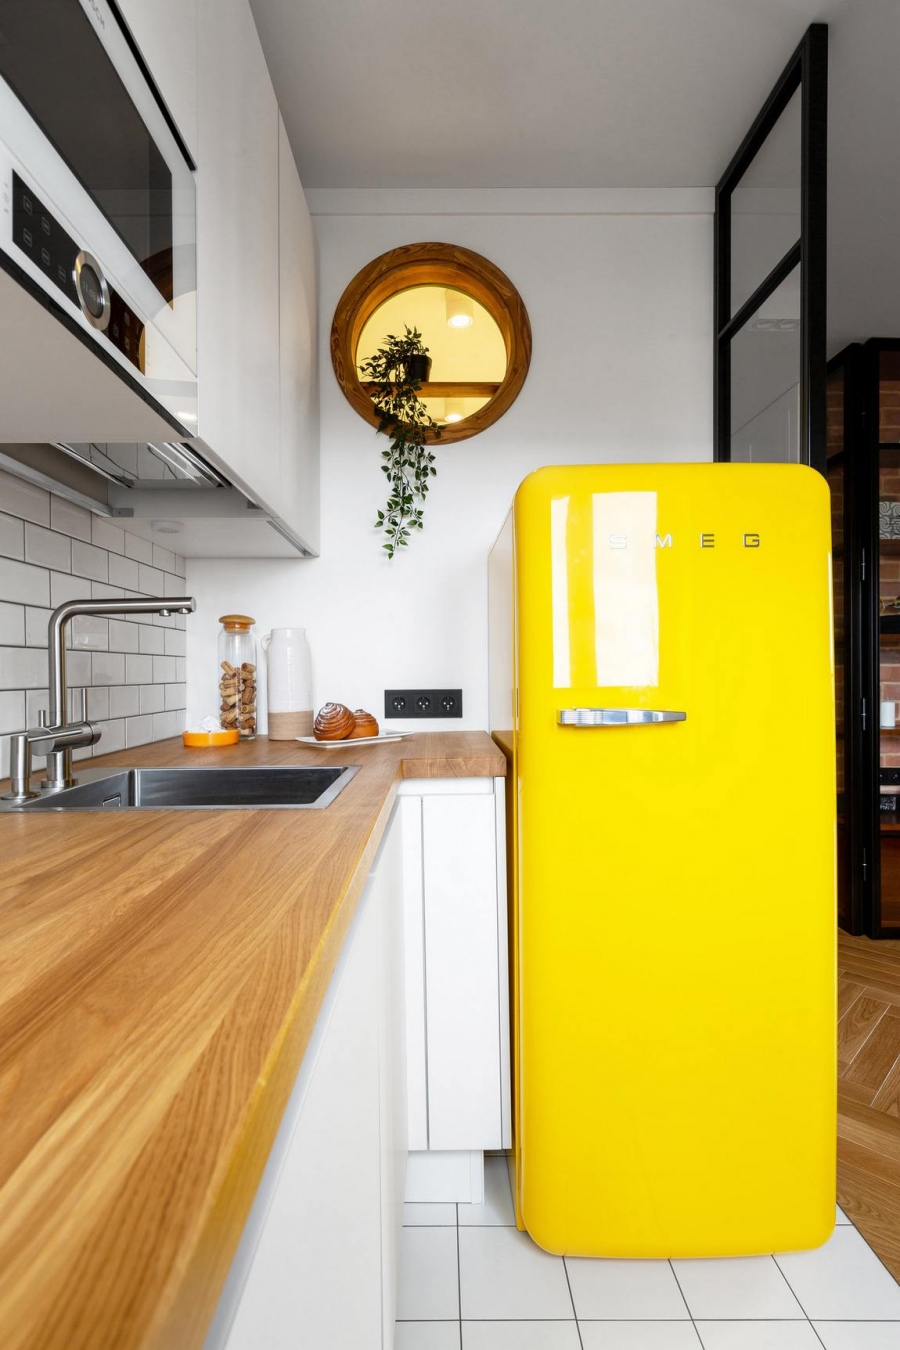 Điểm nhấn nội thất nổi bật trong phòng bếp có thể kể đến chính là chiếc tủ lạnh màu vàng tươi đến từ thương hiệu SMEG nổi tiếng. Phía trên là khung cửa nhỏ hình tròn với chậu cây xanh trang trí mềm mại.